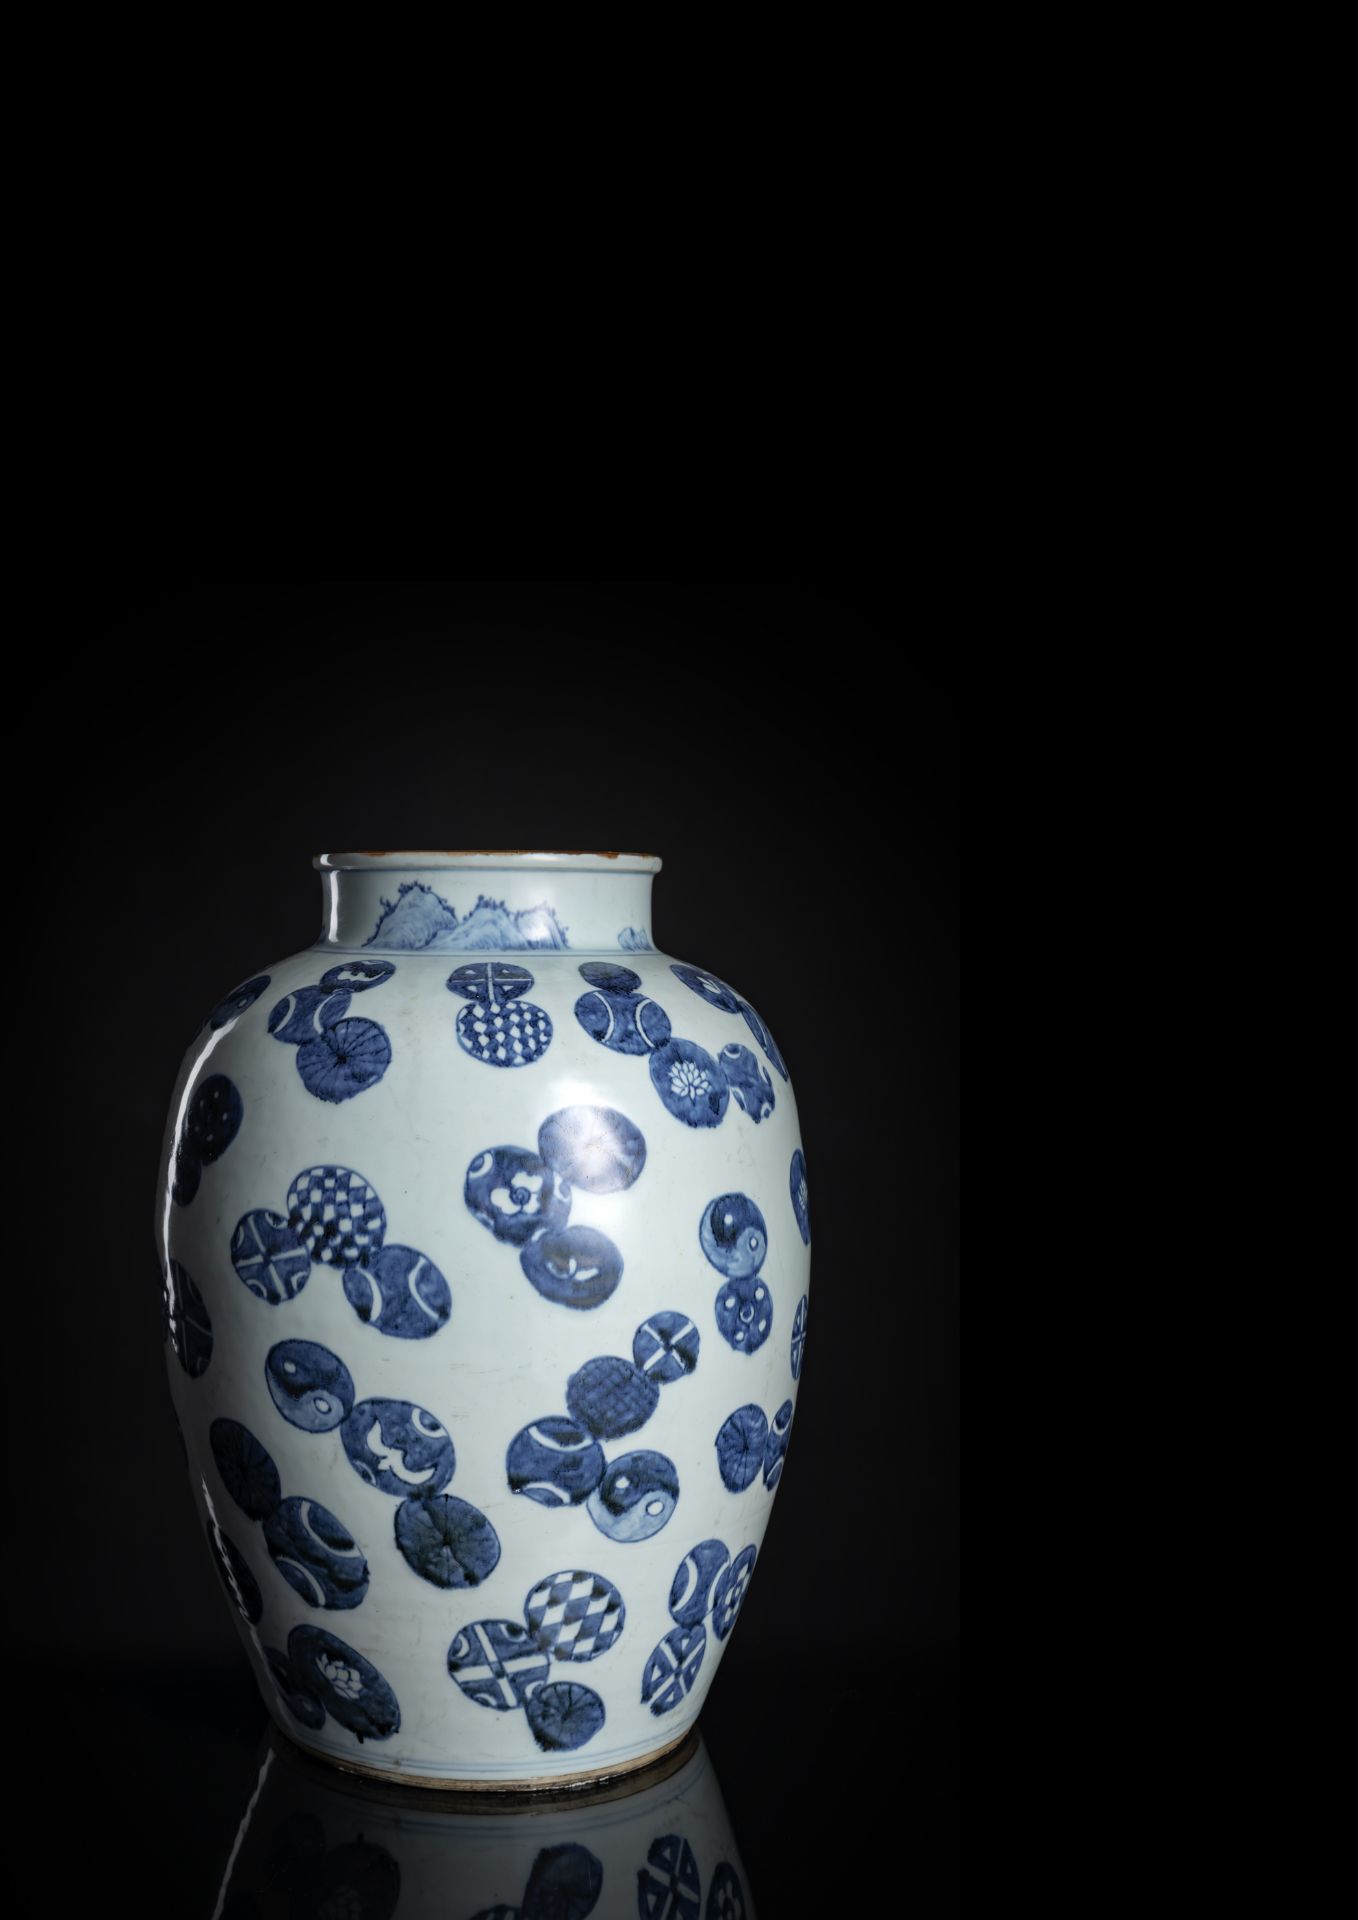 Seltener Schultertopf aus Porzellan mit unterglasurblauem von Bällen und Medaillons